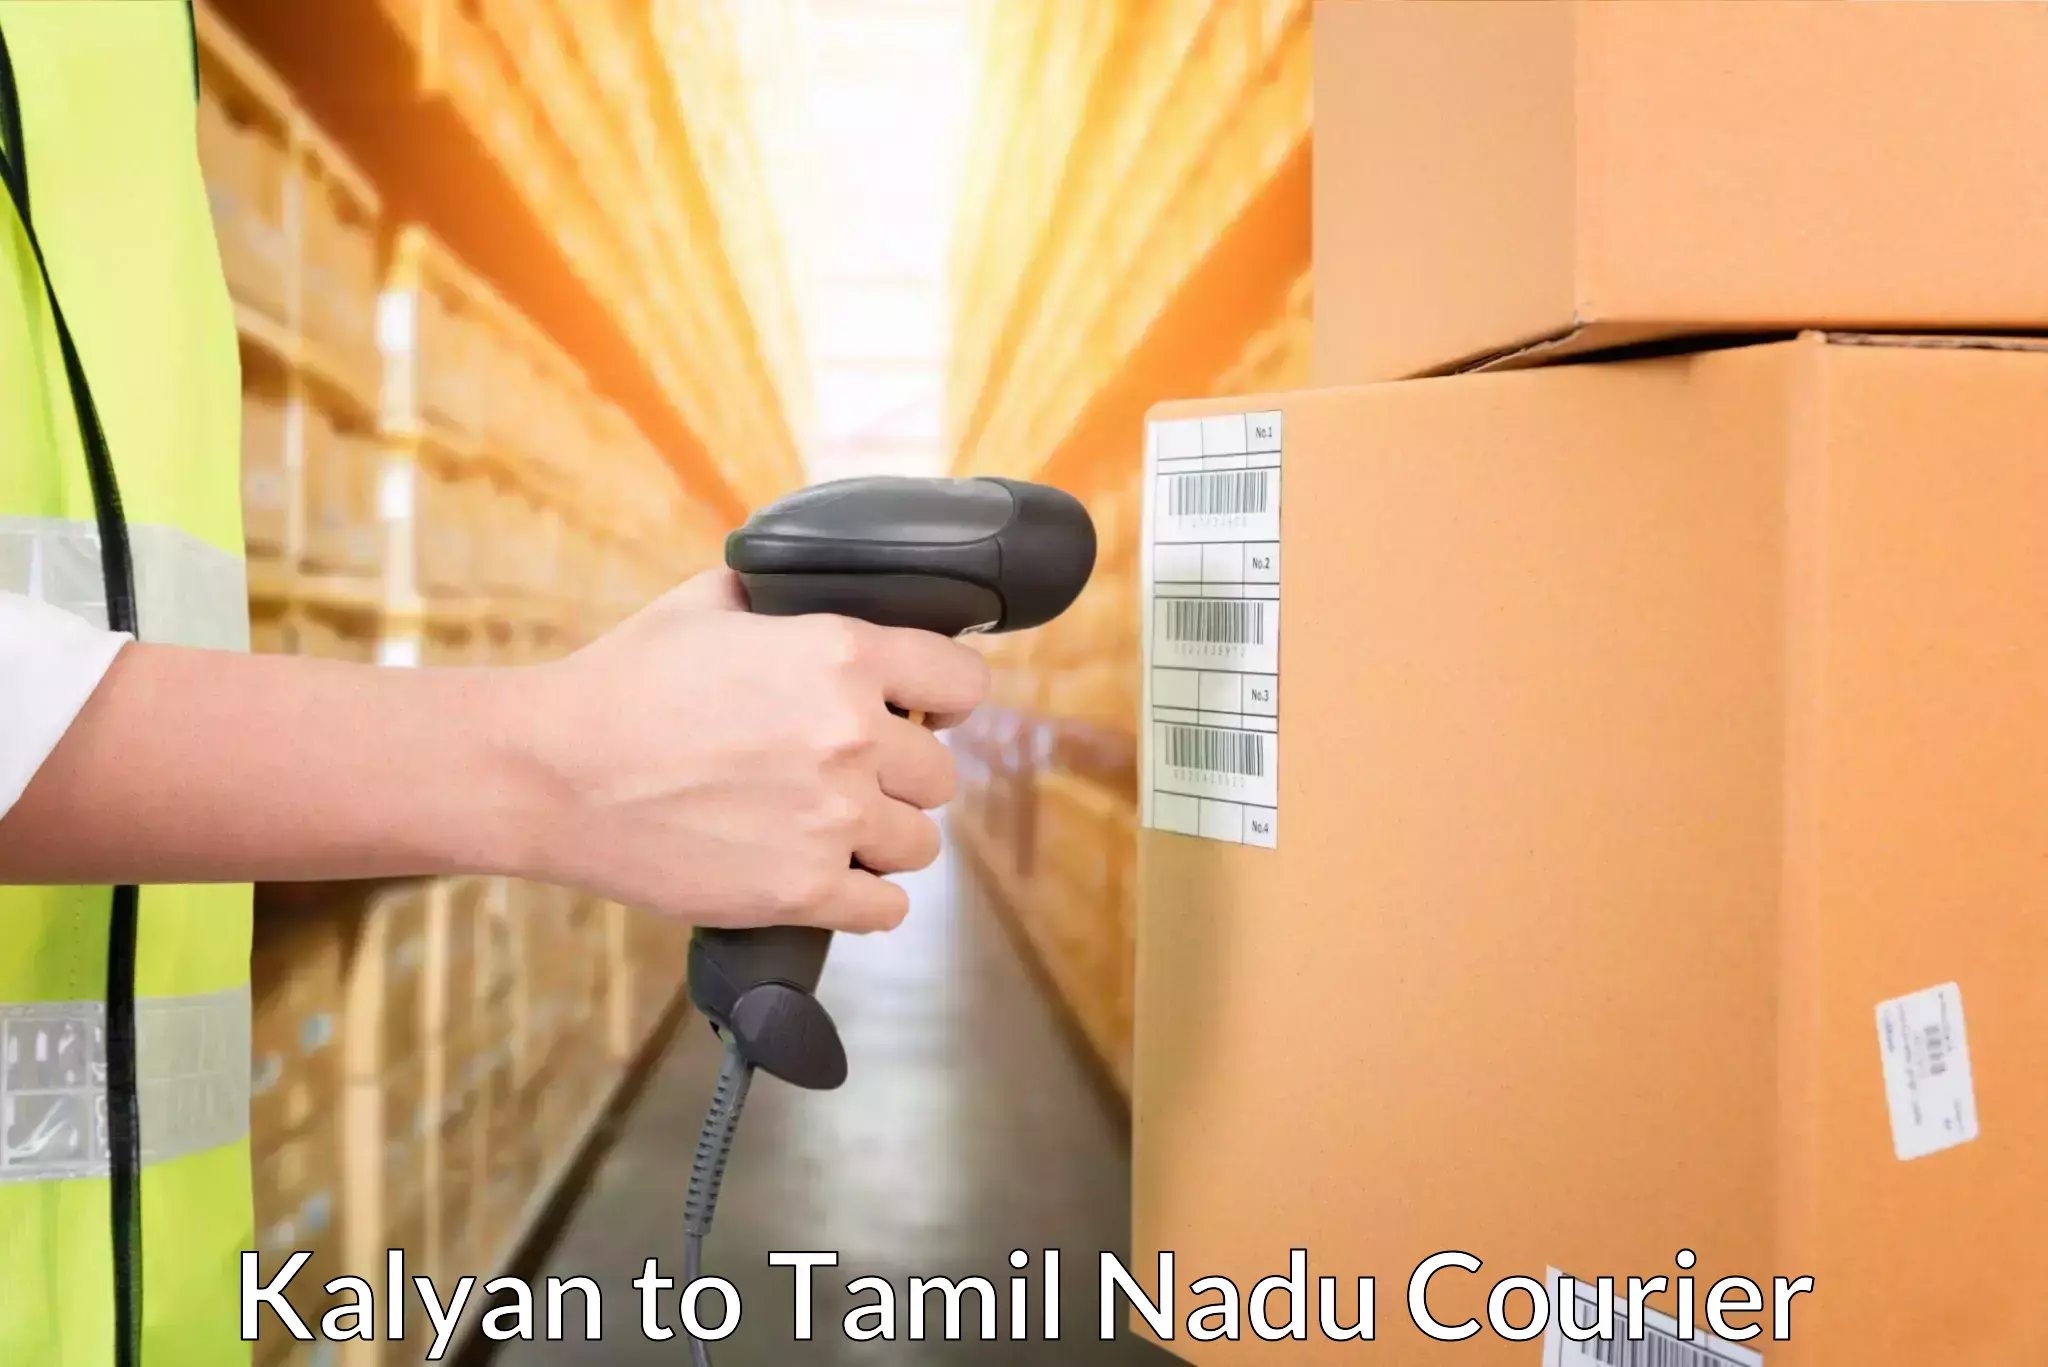 High-speed parcel service Kalyan to Perambalur